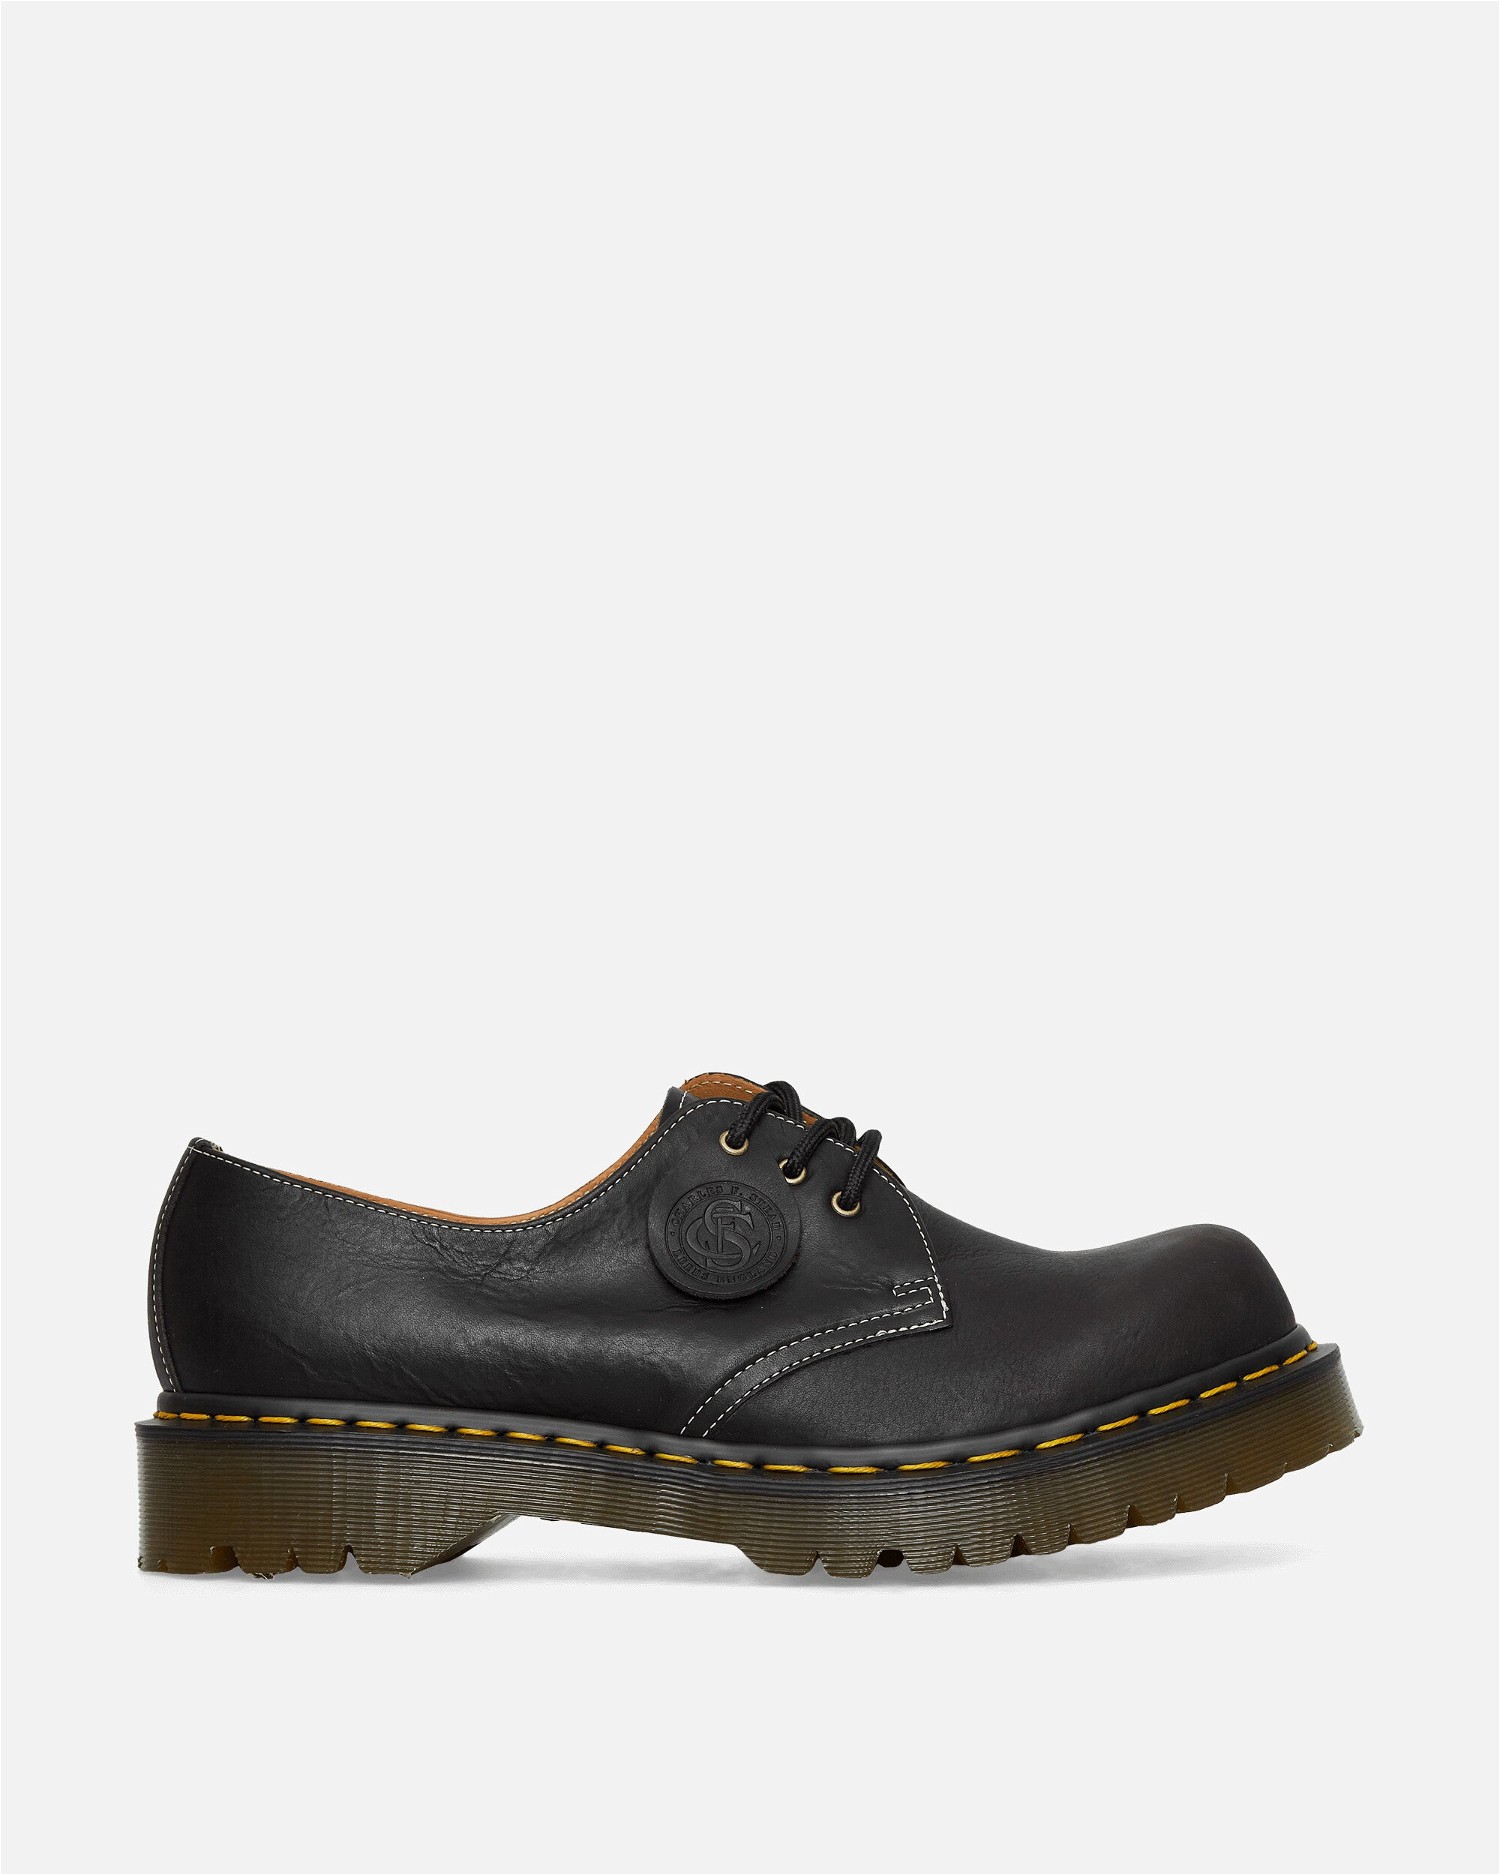 Sneakerek és cipők Dr. Martens 1461 3 Eye "Charcoal" Fekete | 31017057 001, 1